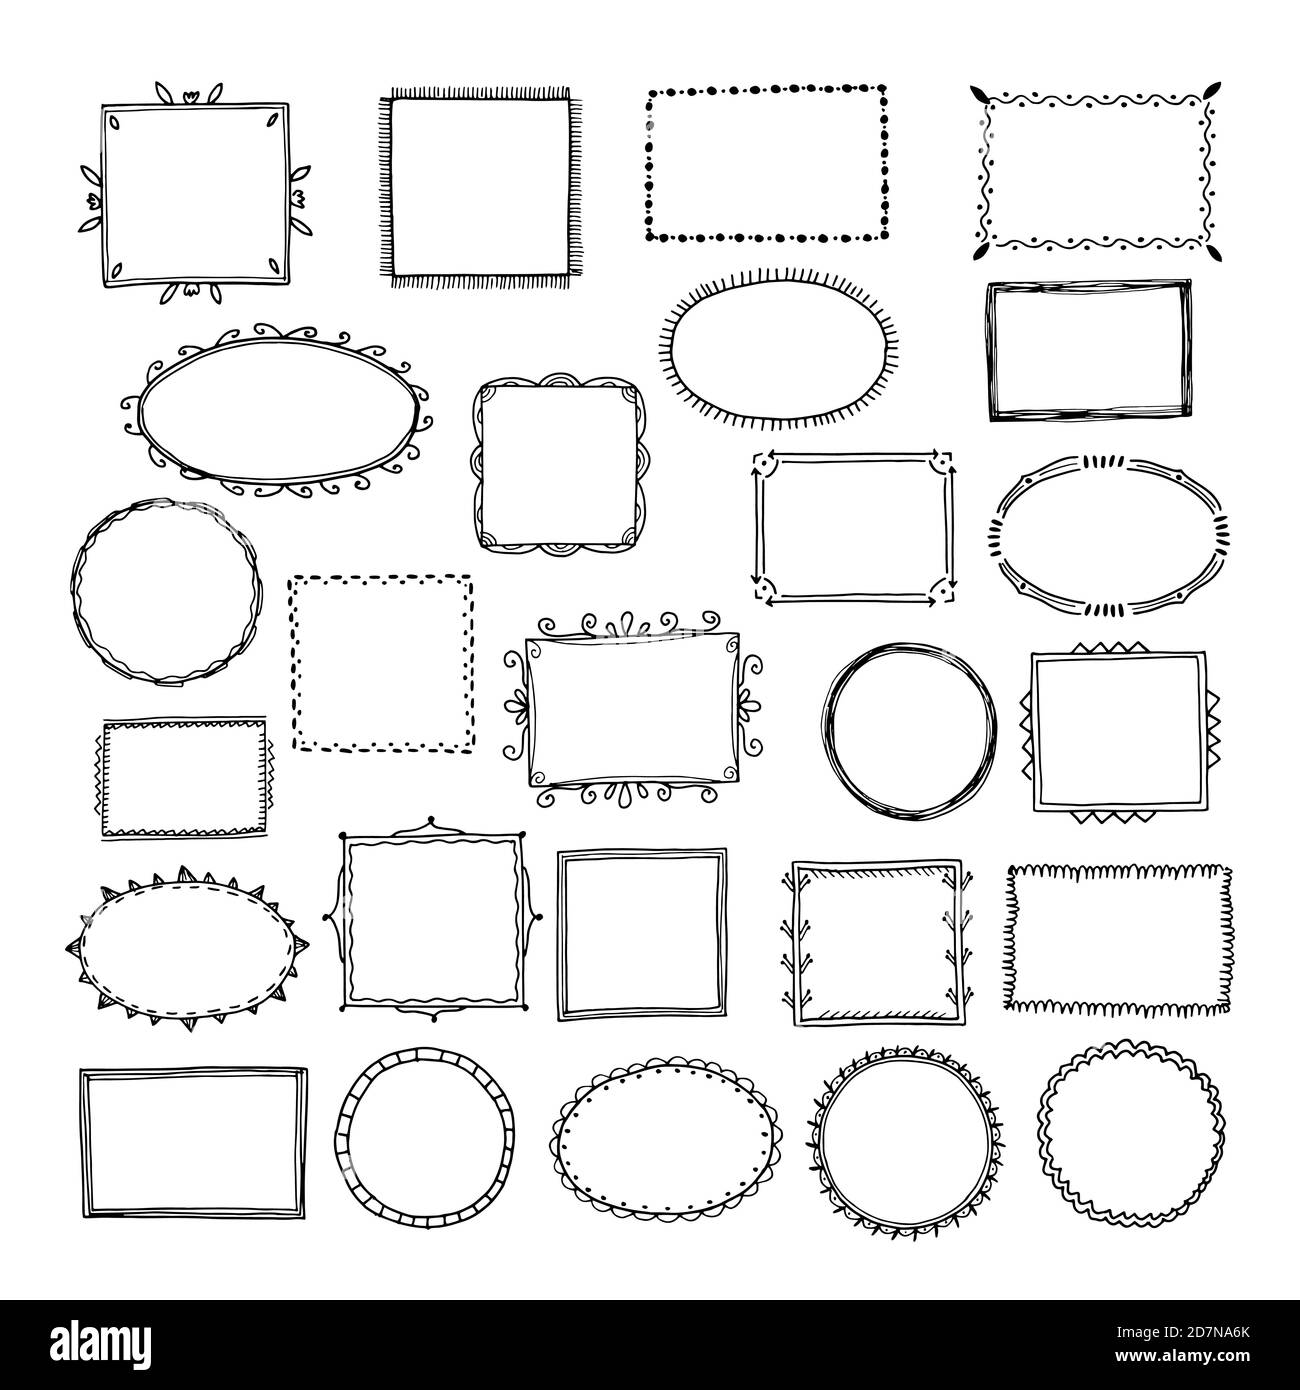 marco de hojas de dibujo de mano cuadrada Imagen Vector de stock